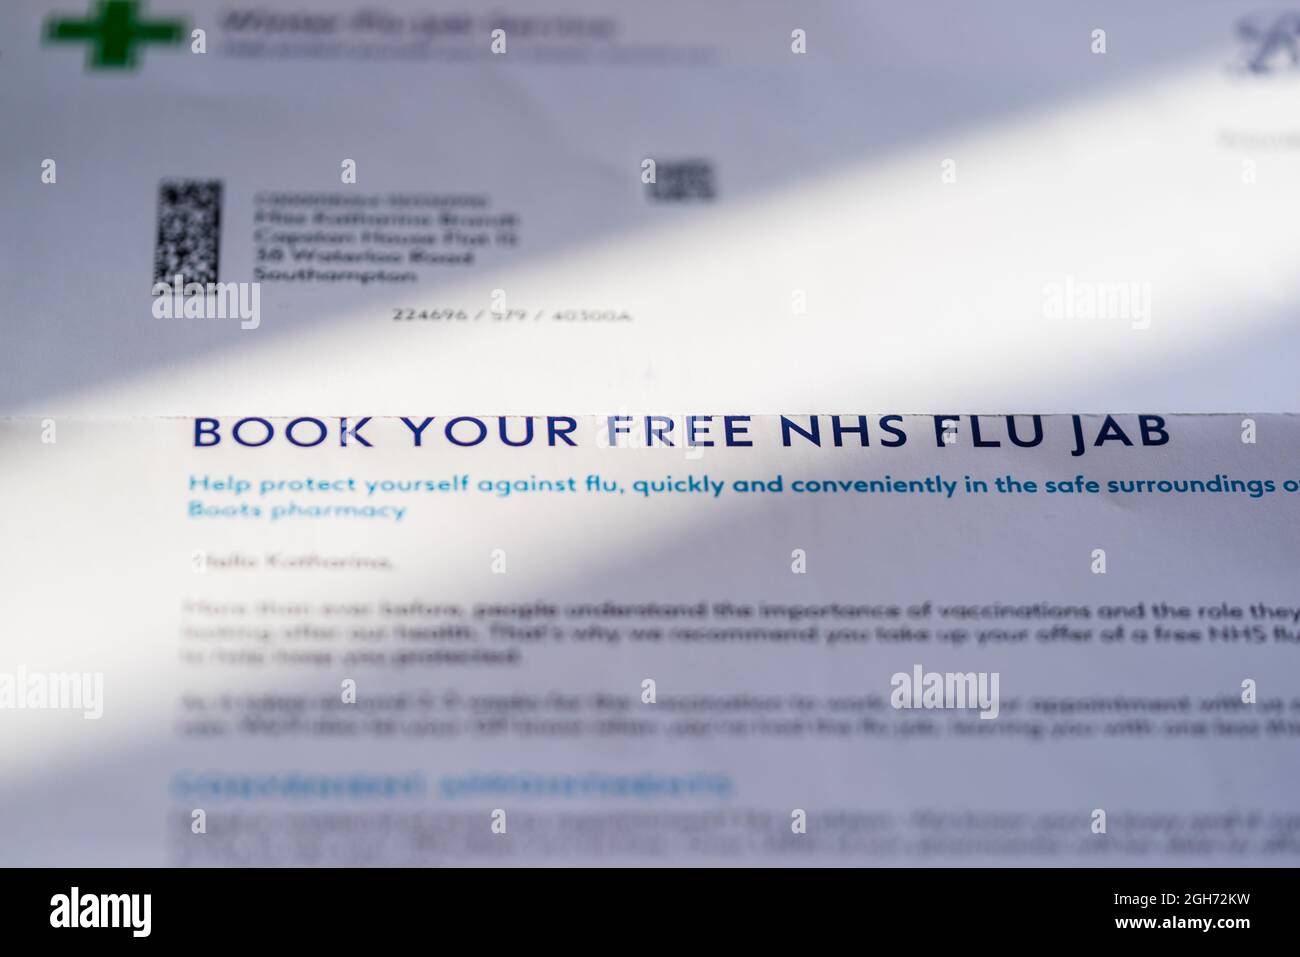 Reserva tu invitación gratis a NHS para la carta de gripe jab, Inglaterra, Reino Unido Foto de stock